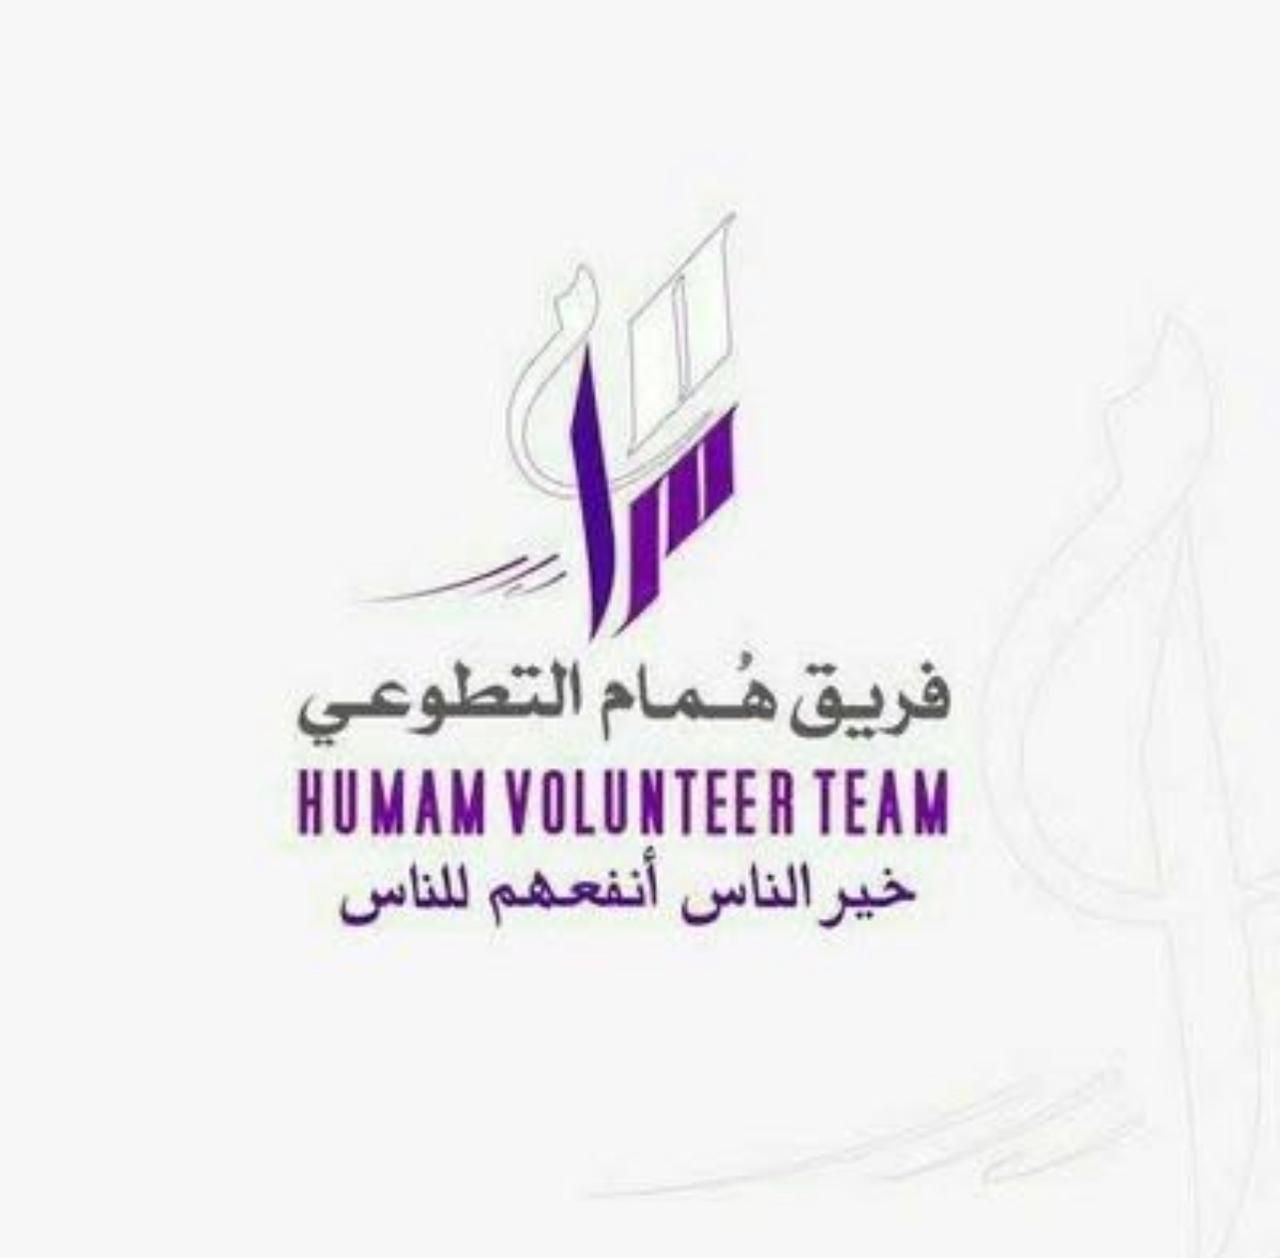 فريق هُمام التطوعي يقدم برنامج”مهارات الأدارة والسكرتارية الحديثه”